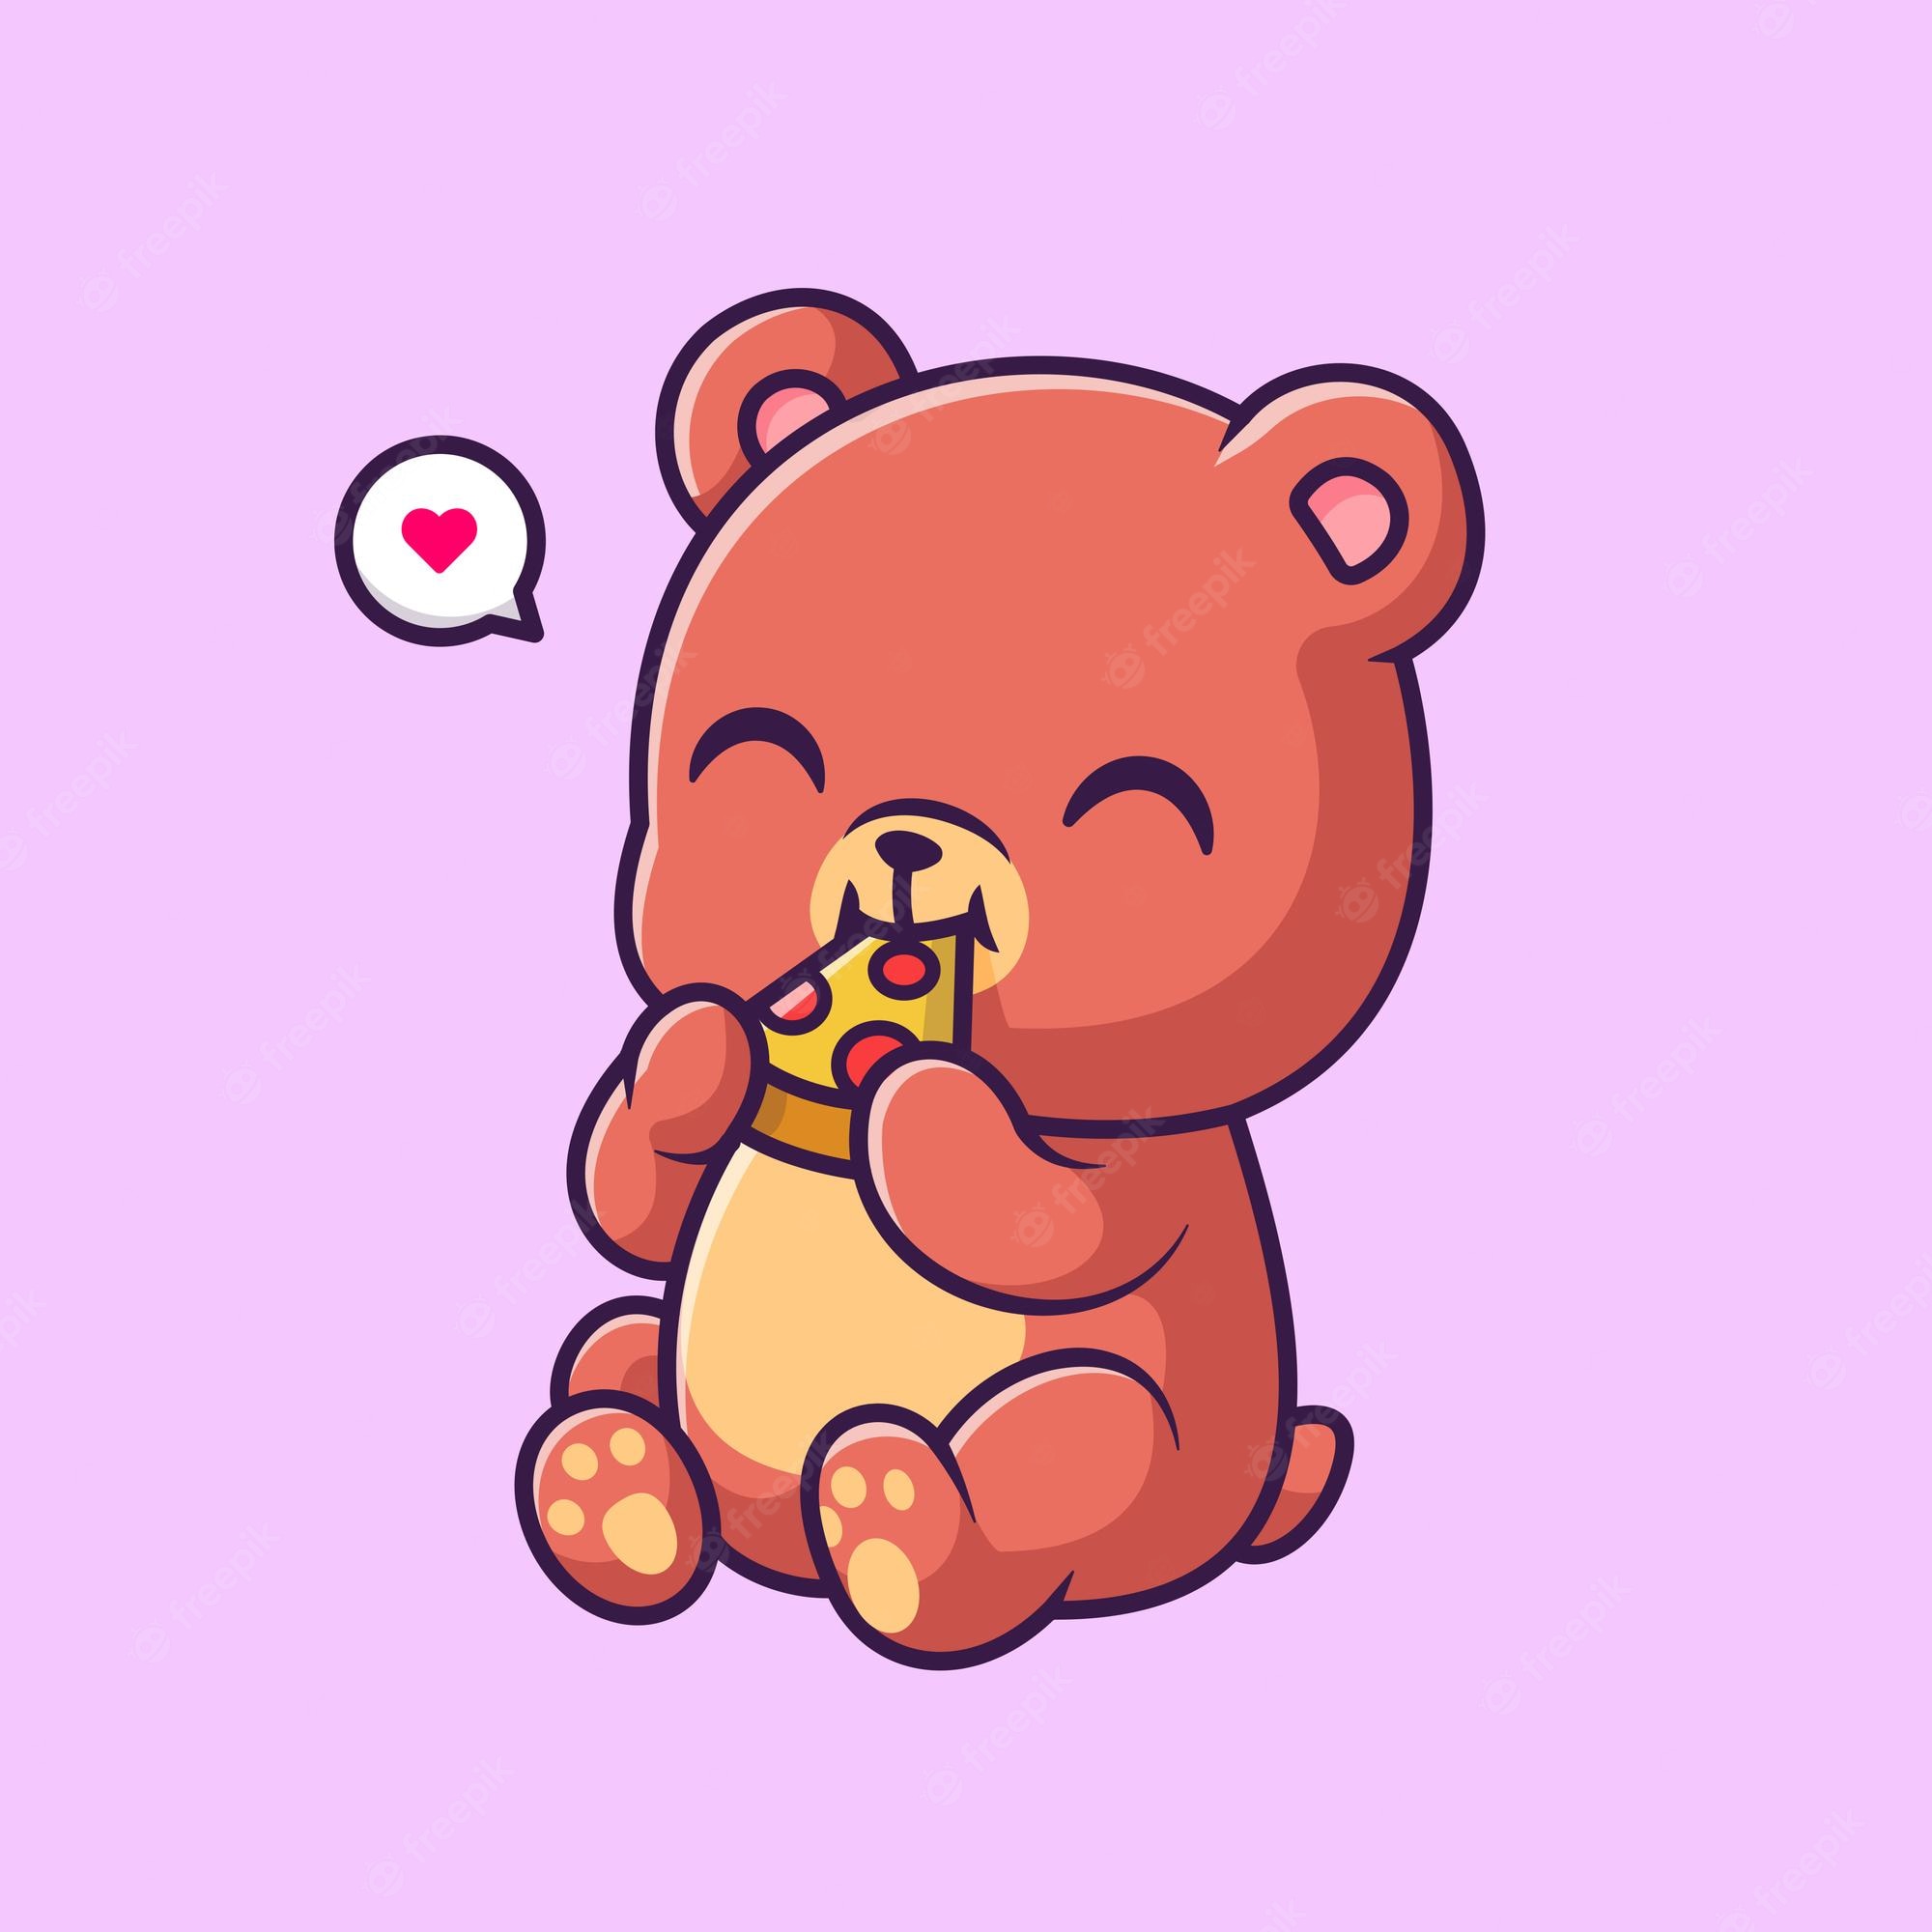 Cute teddy bears in love animated gif cute bear drawings cute cartoon wallpapers teddy bear cartoon